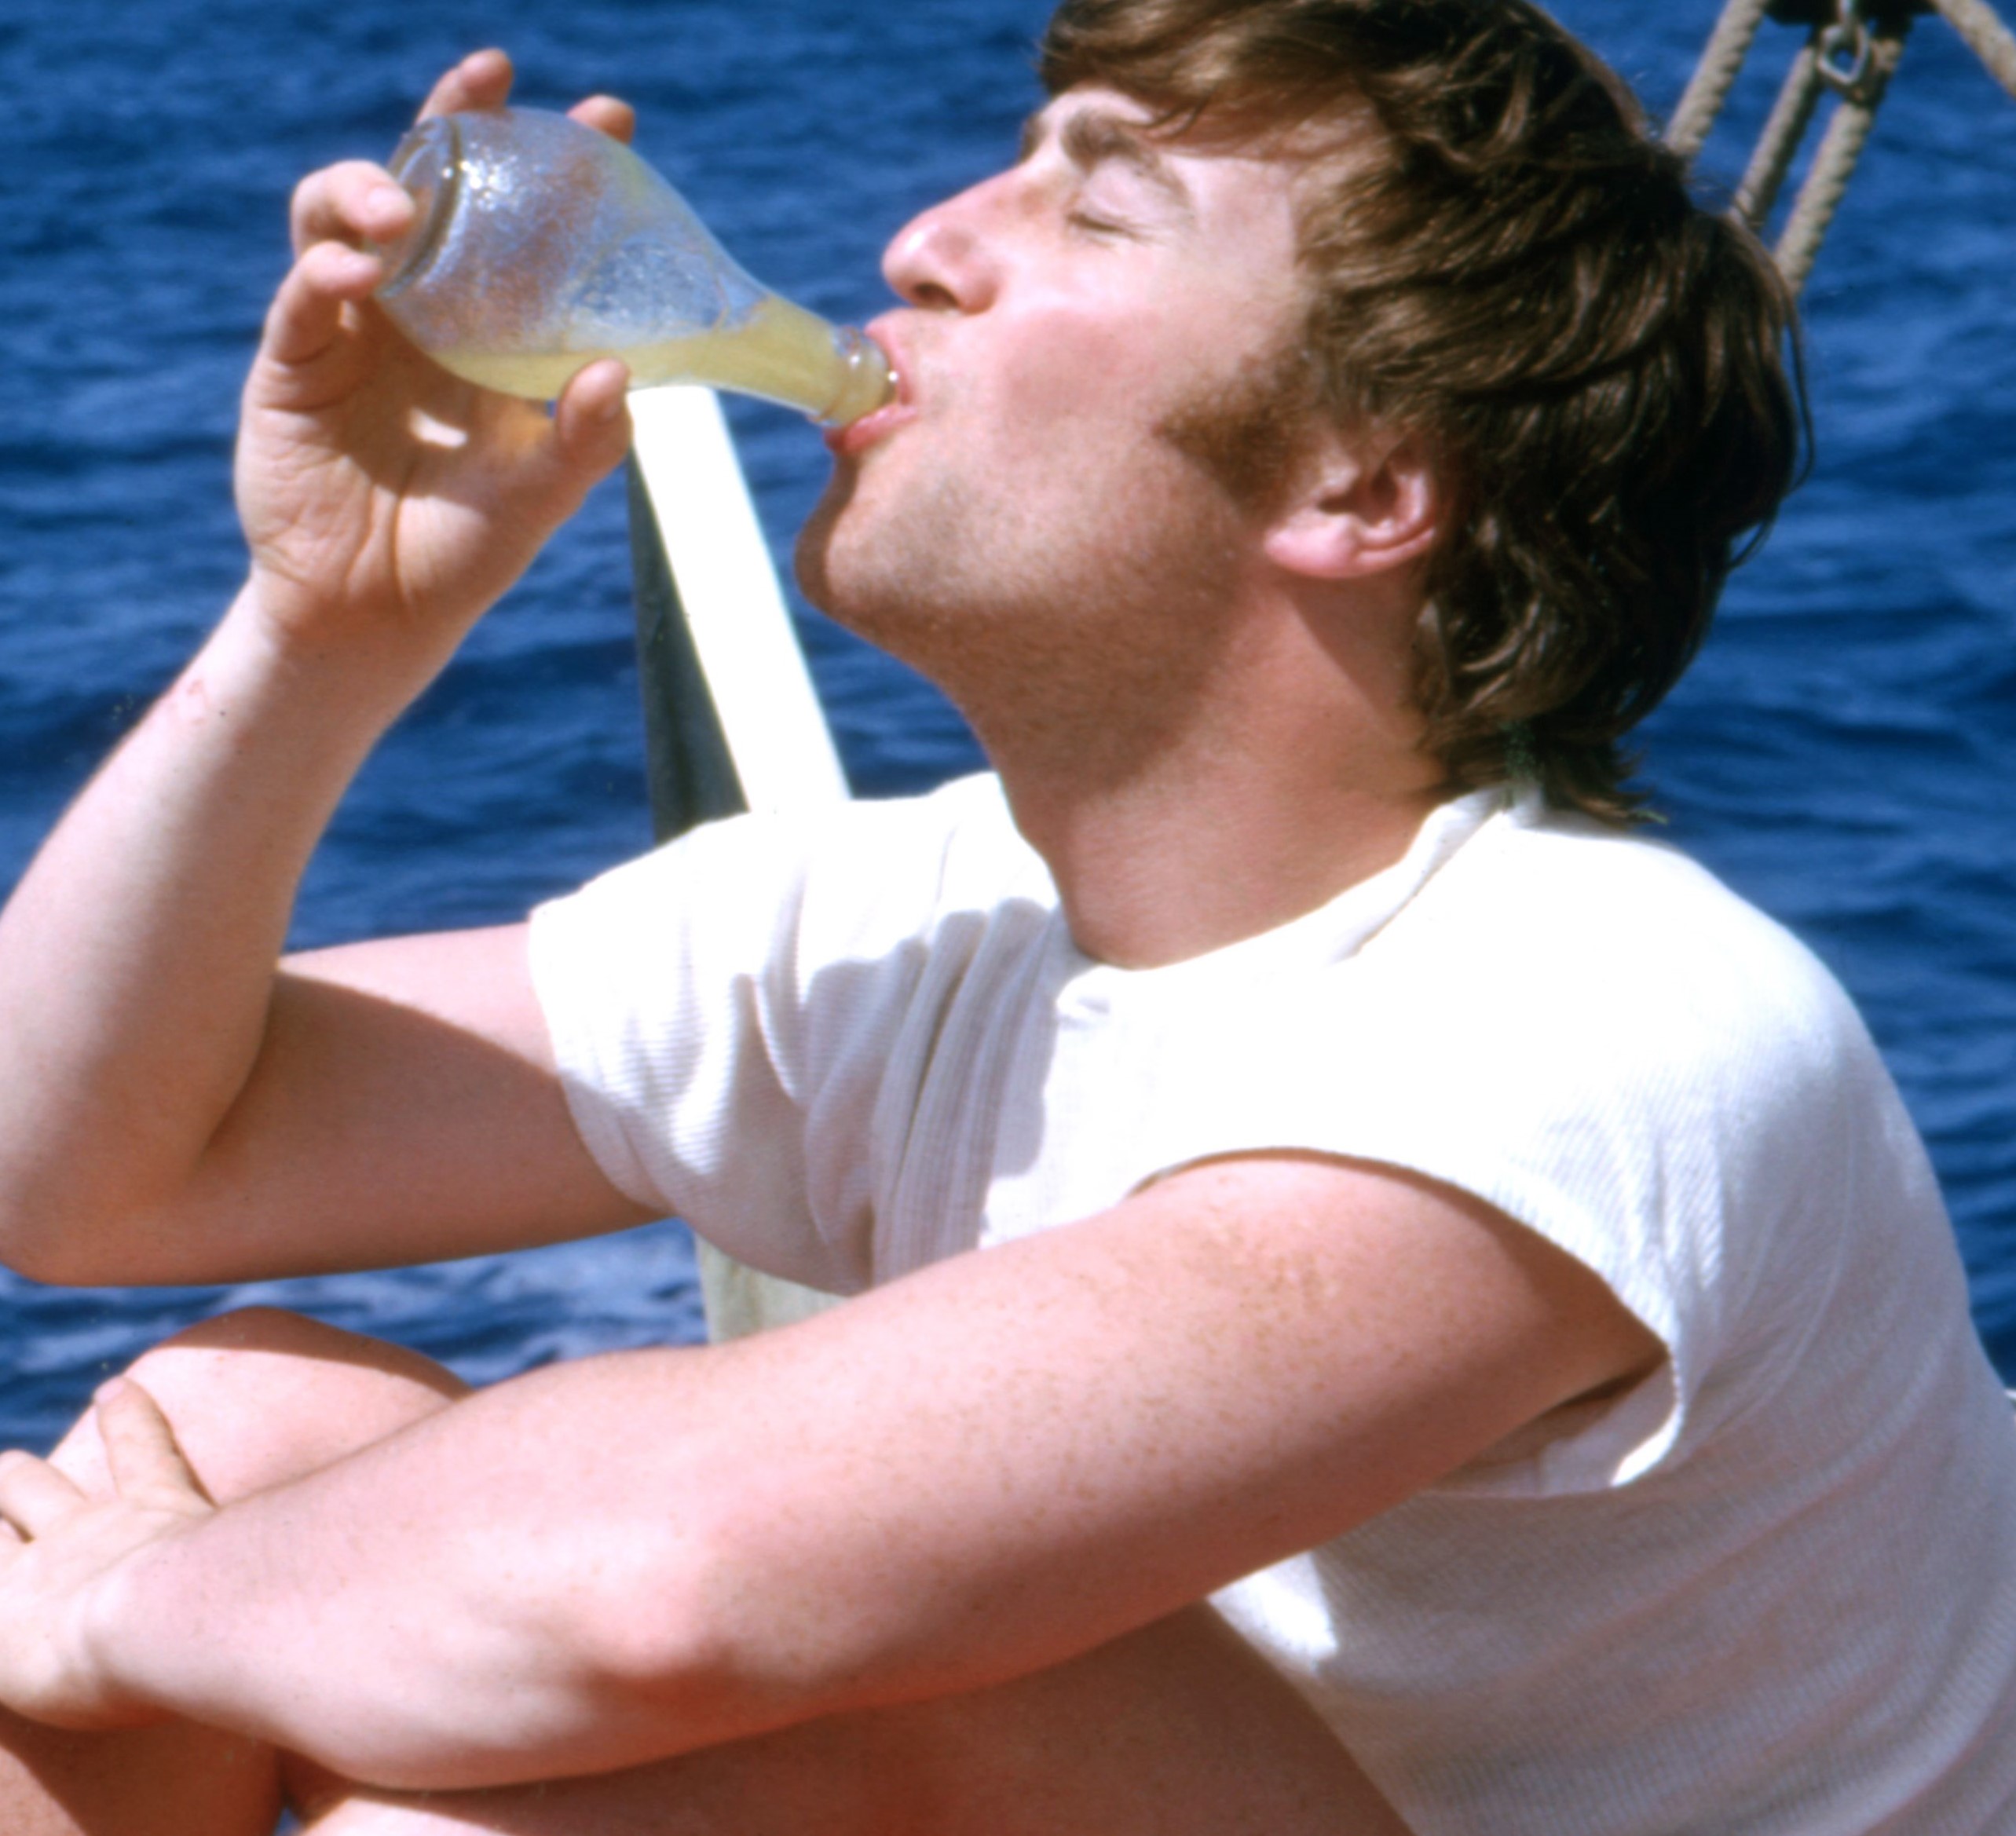 John Lennon drinking something